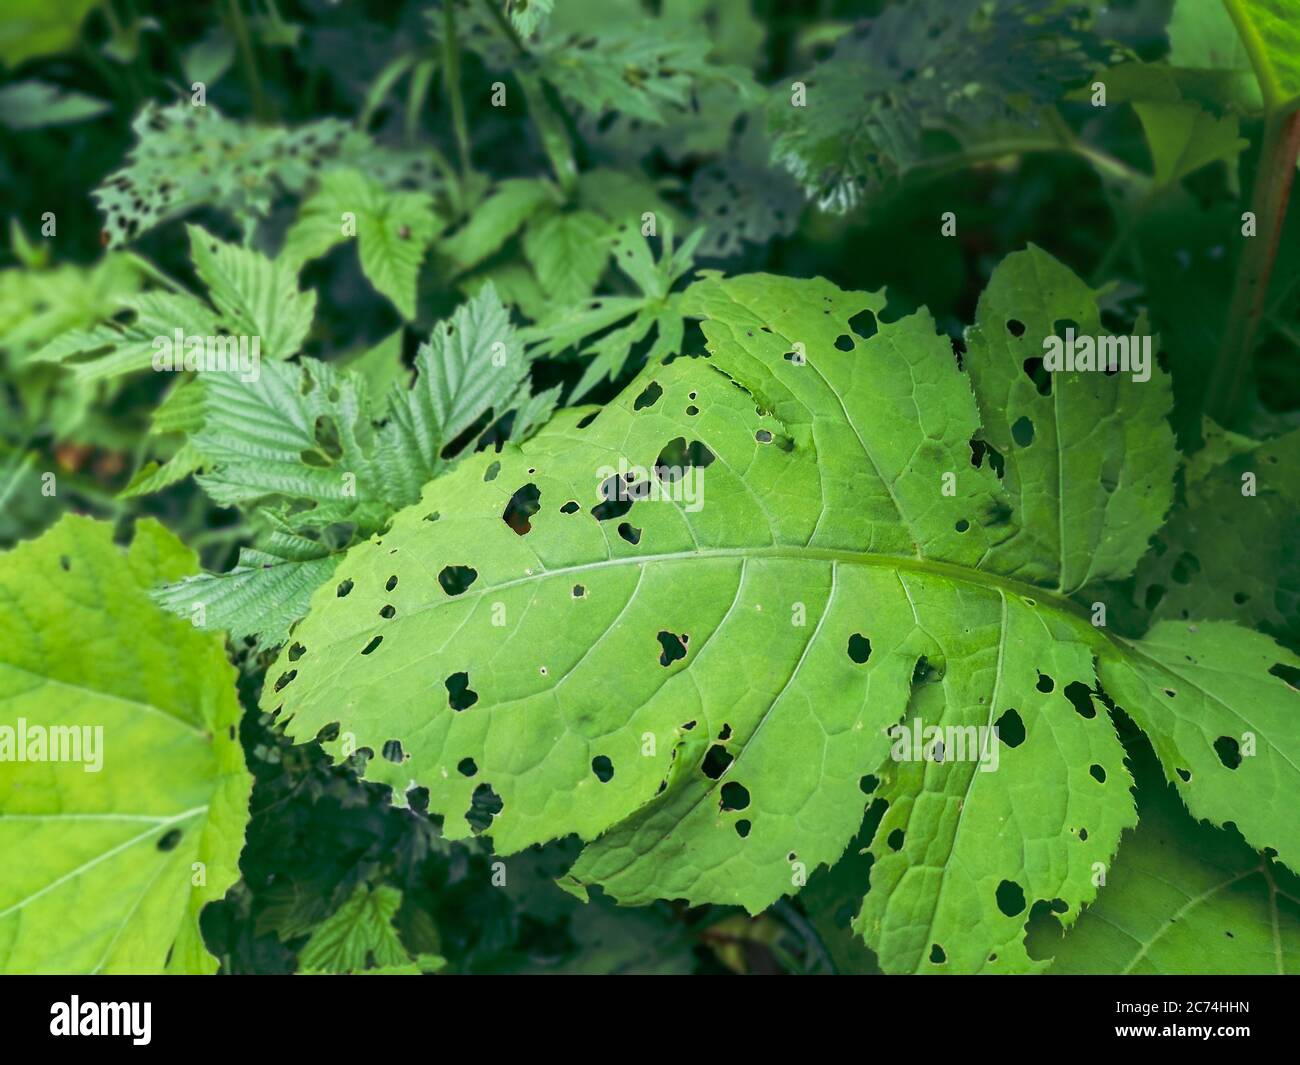 Grande foglia di verde a forma di cuore piena di buchi fatti da insetti. Selvaggio bagnato montagna bosco fogliame sfondo. Foto Stock